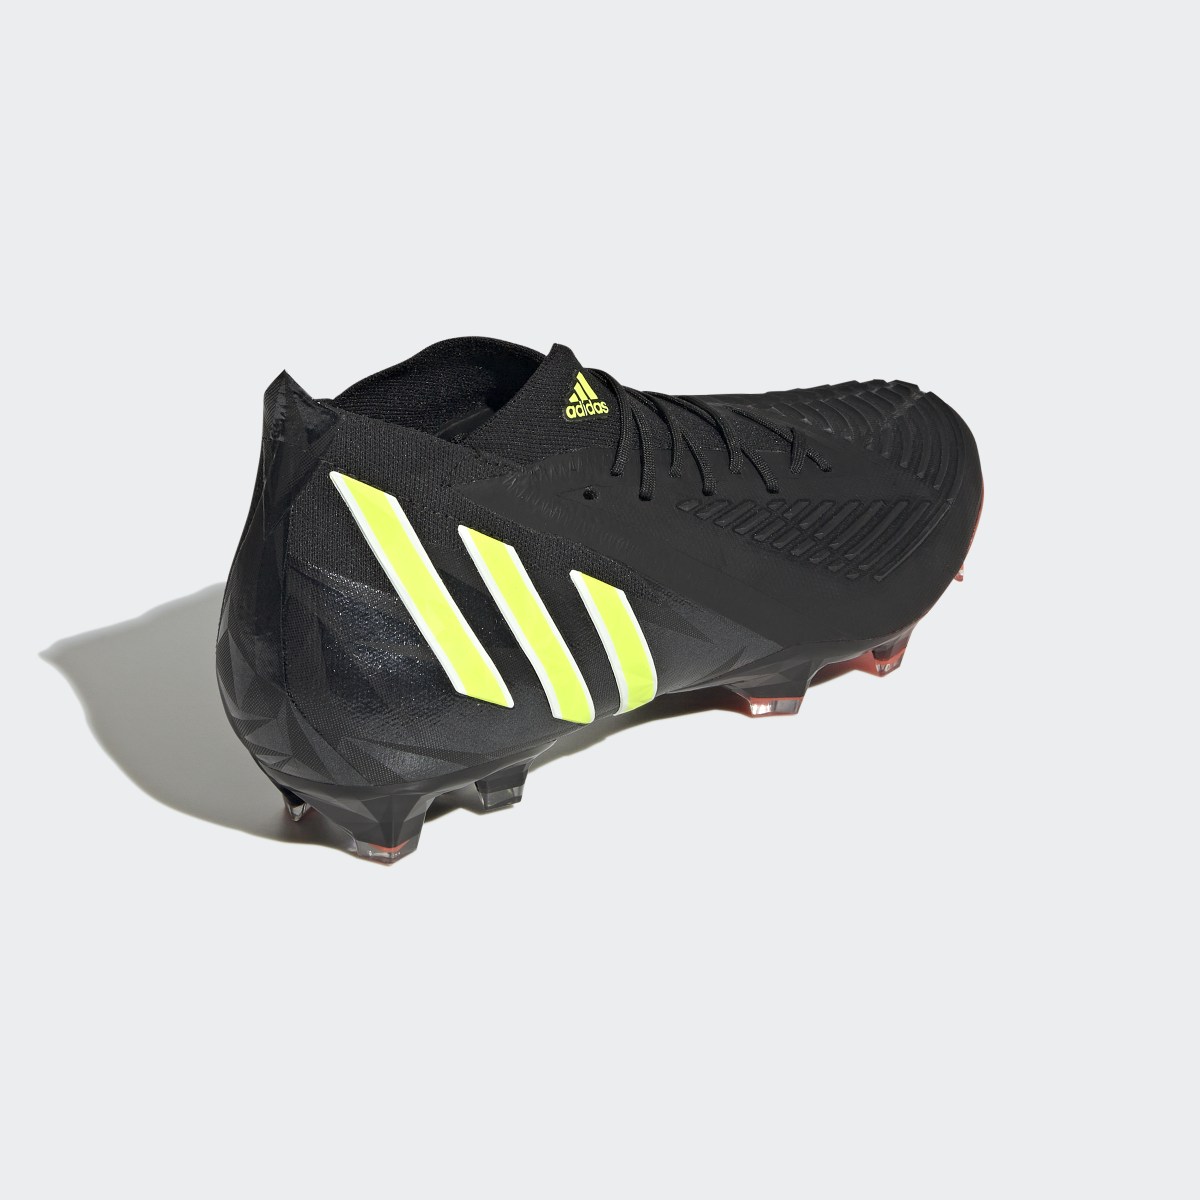 Adidas Botas de Futebol Predator Edge.1 – Piso firme. 6